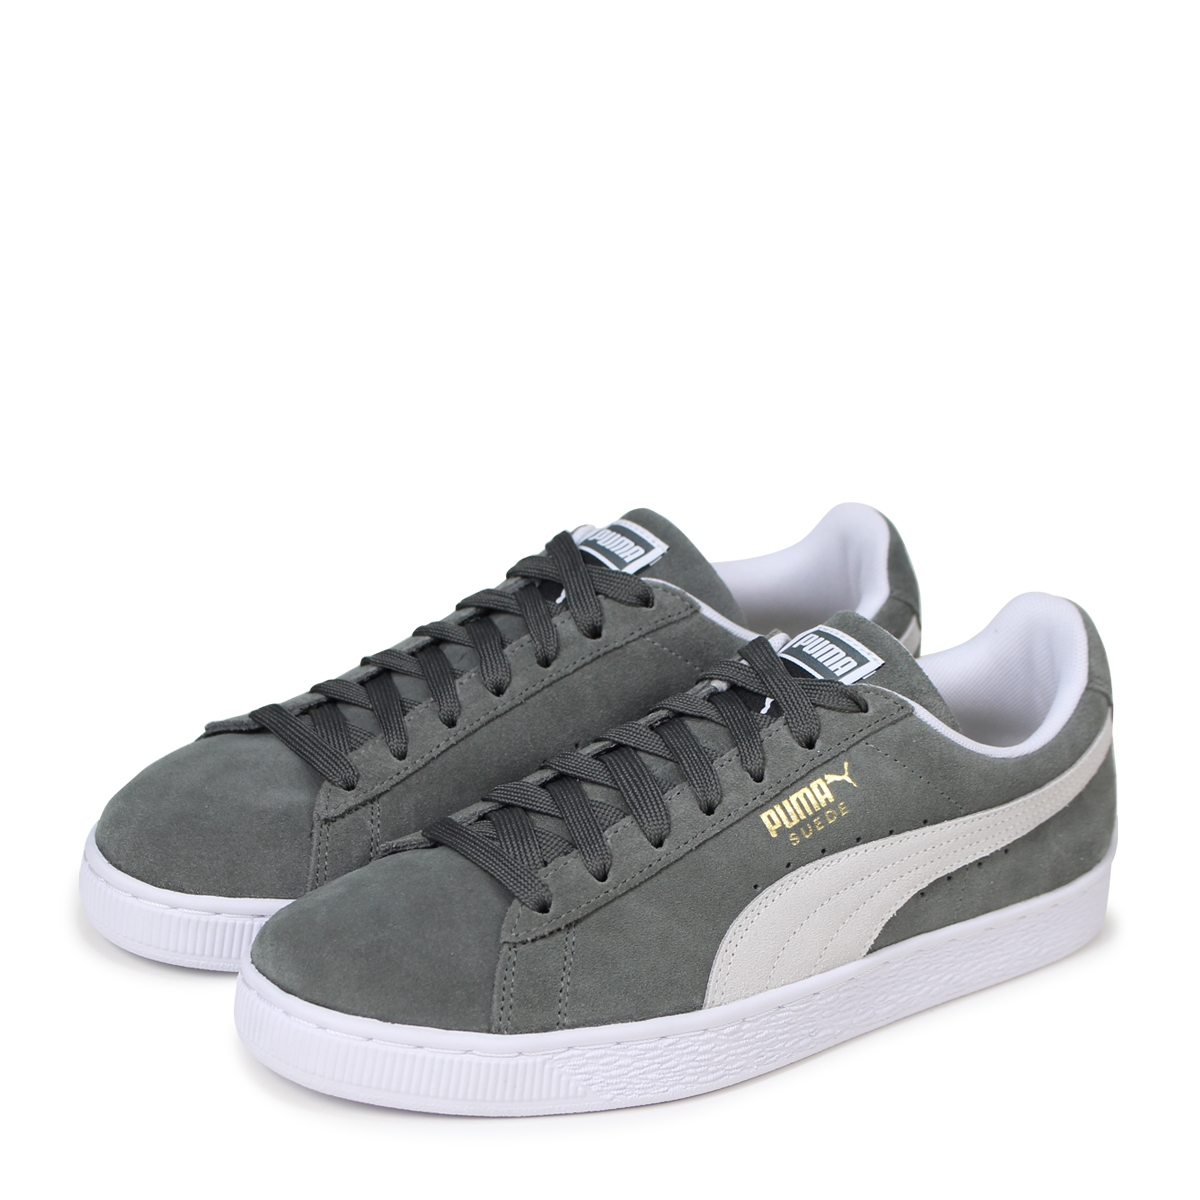 puma shoes for men gray